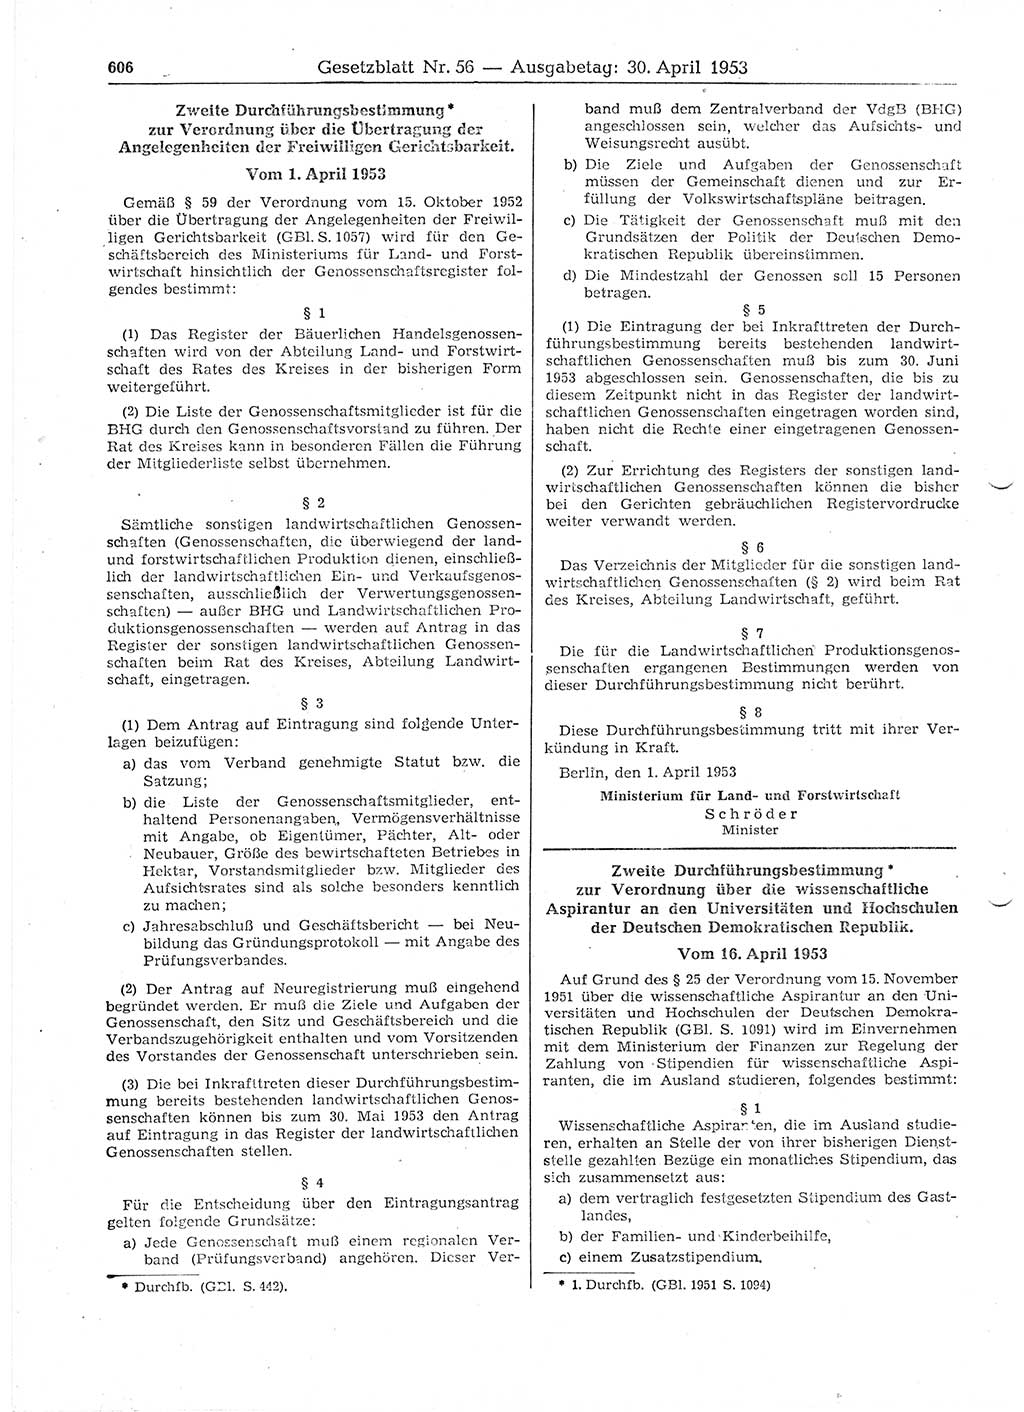 Gesetzblatt (GBl.) der Deutschen Demokratischen Republik (DDR) 1953, Seite 606 (GBl. DDR 1953, S. 606)